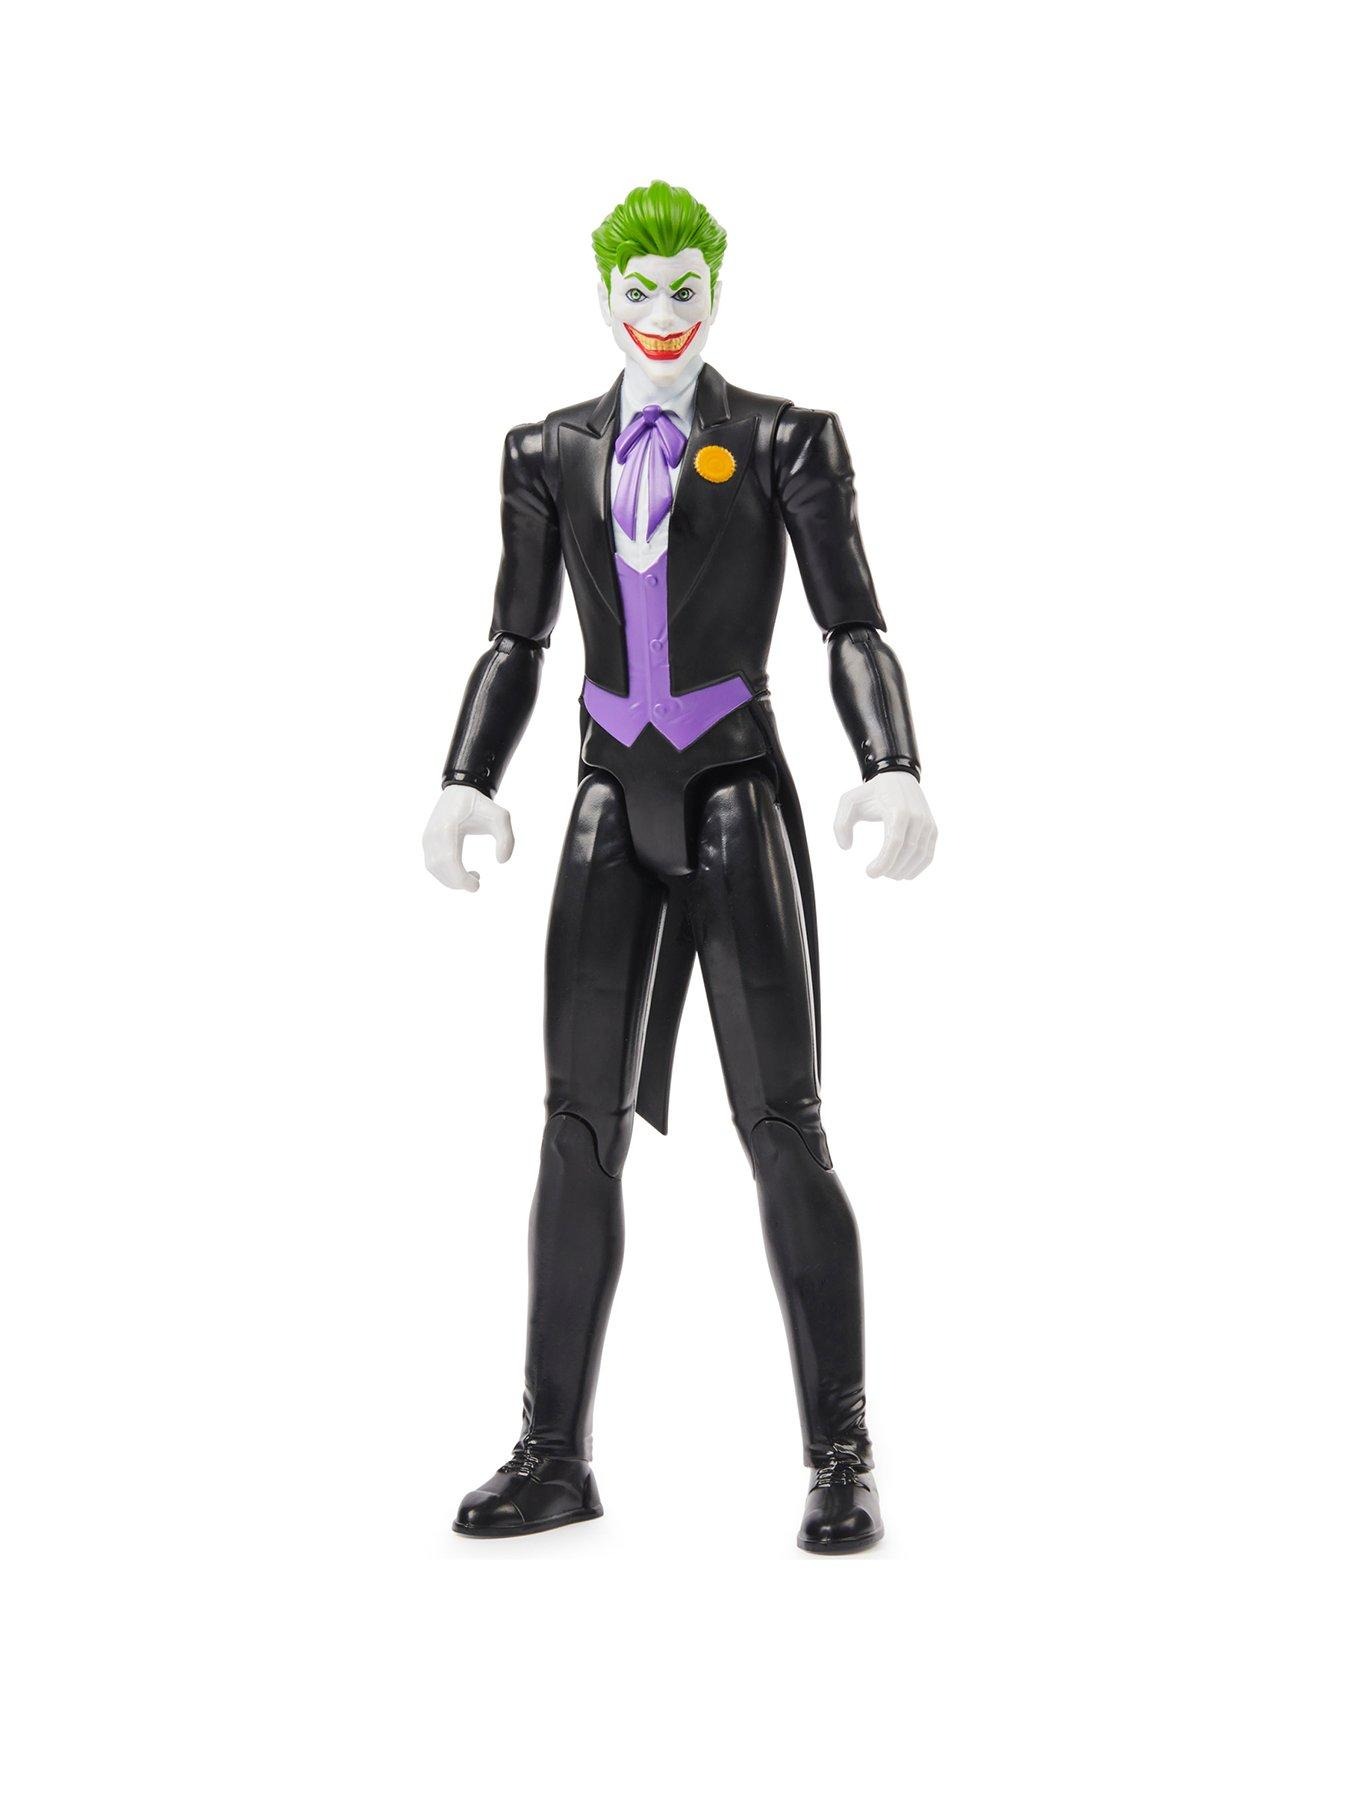 30 cm Figur - The Joker